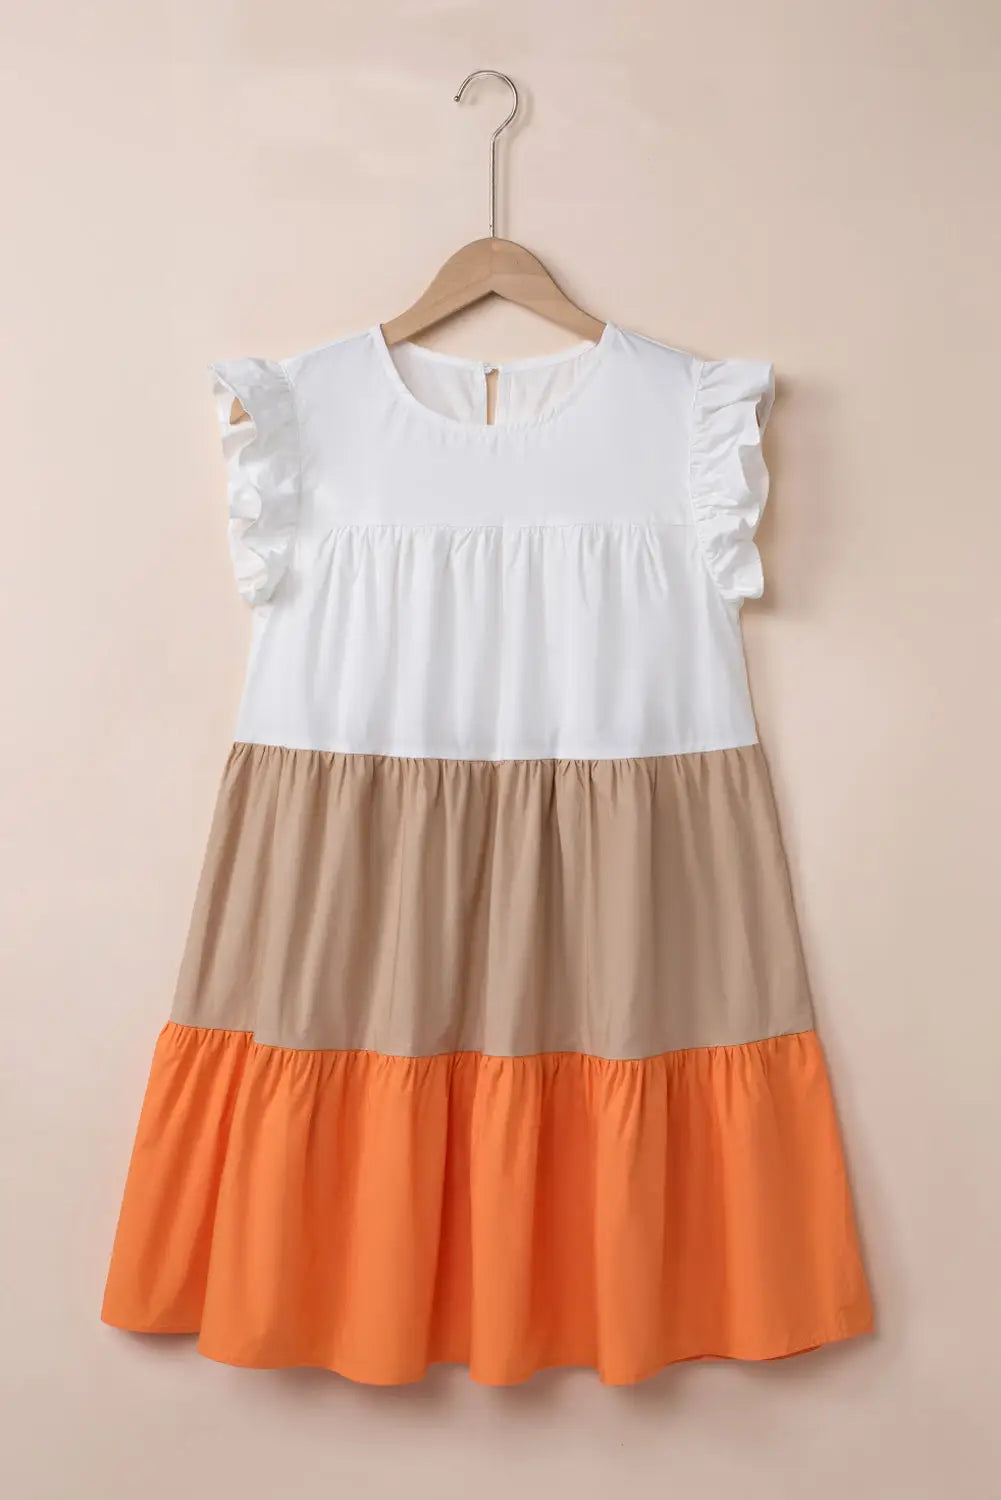 Apricot tiered mini dress - dresses